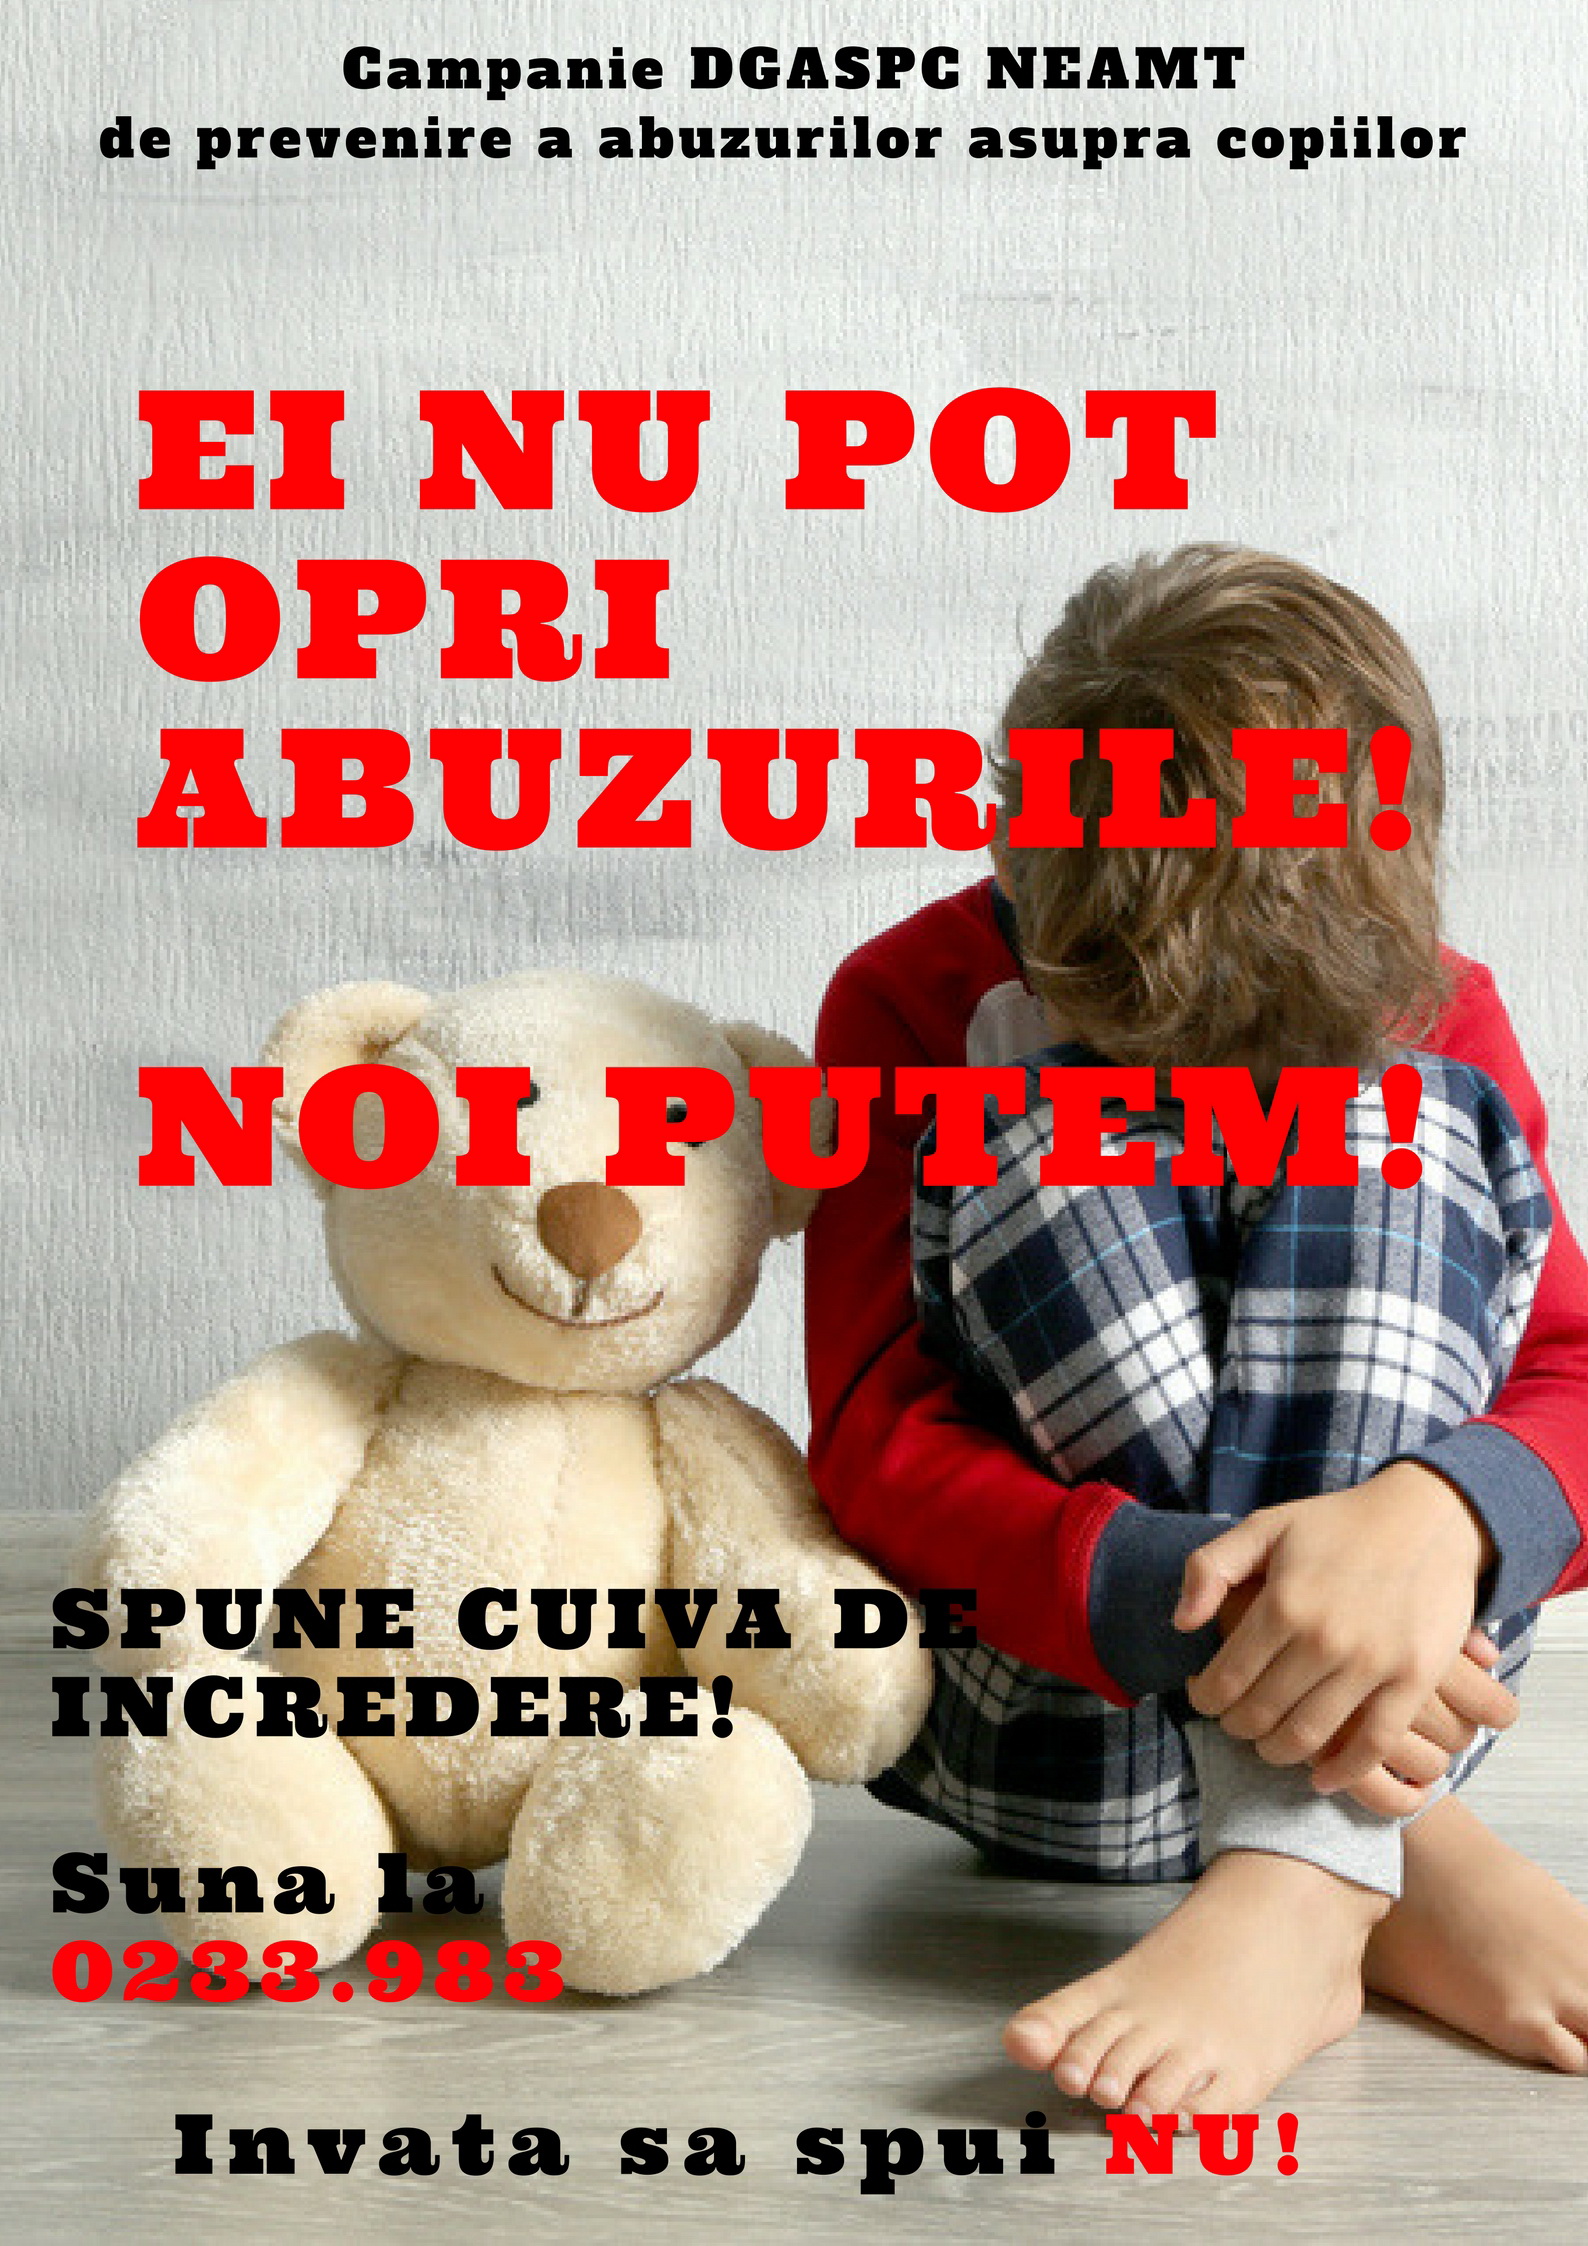 REVOLTĂTOR! Aproape 500 de copii din Neamț, maltratați anul acesta de familie! Știi un asemenea caz? Sună urgent la 0233.983!!!